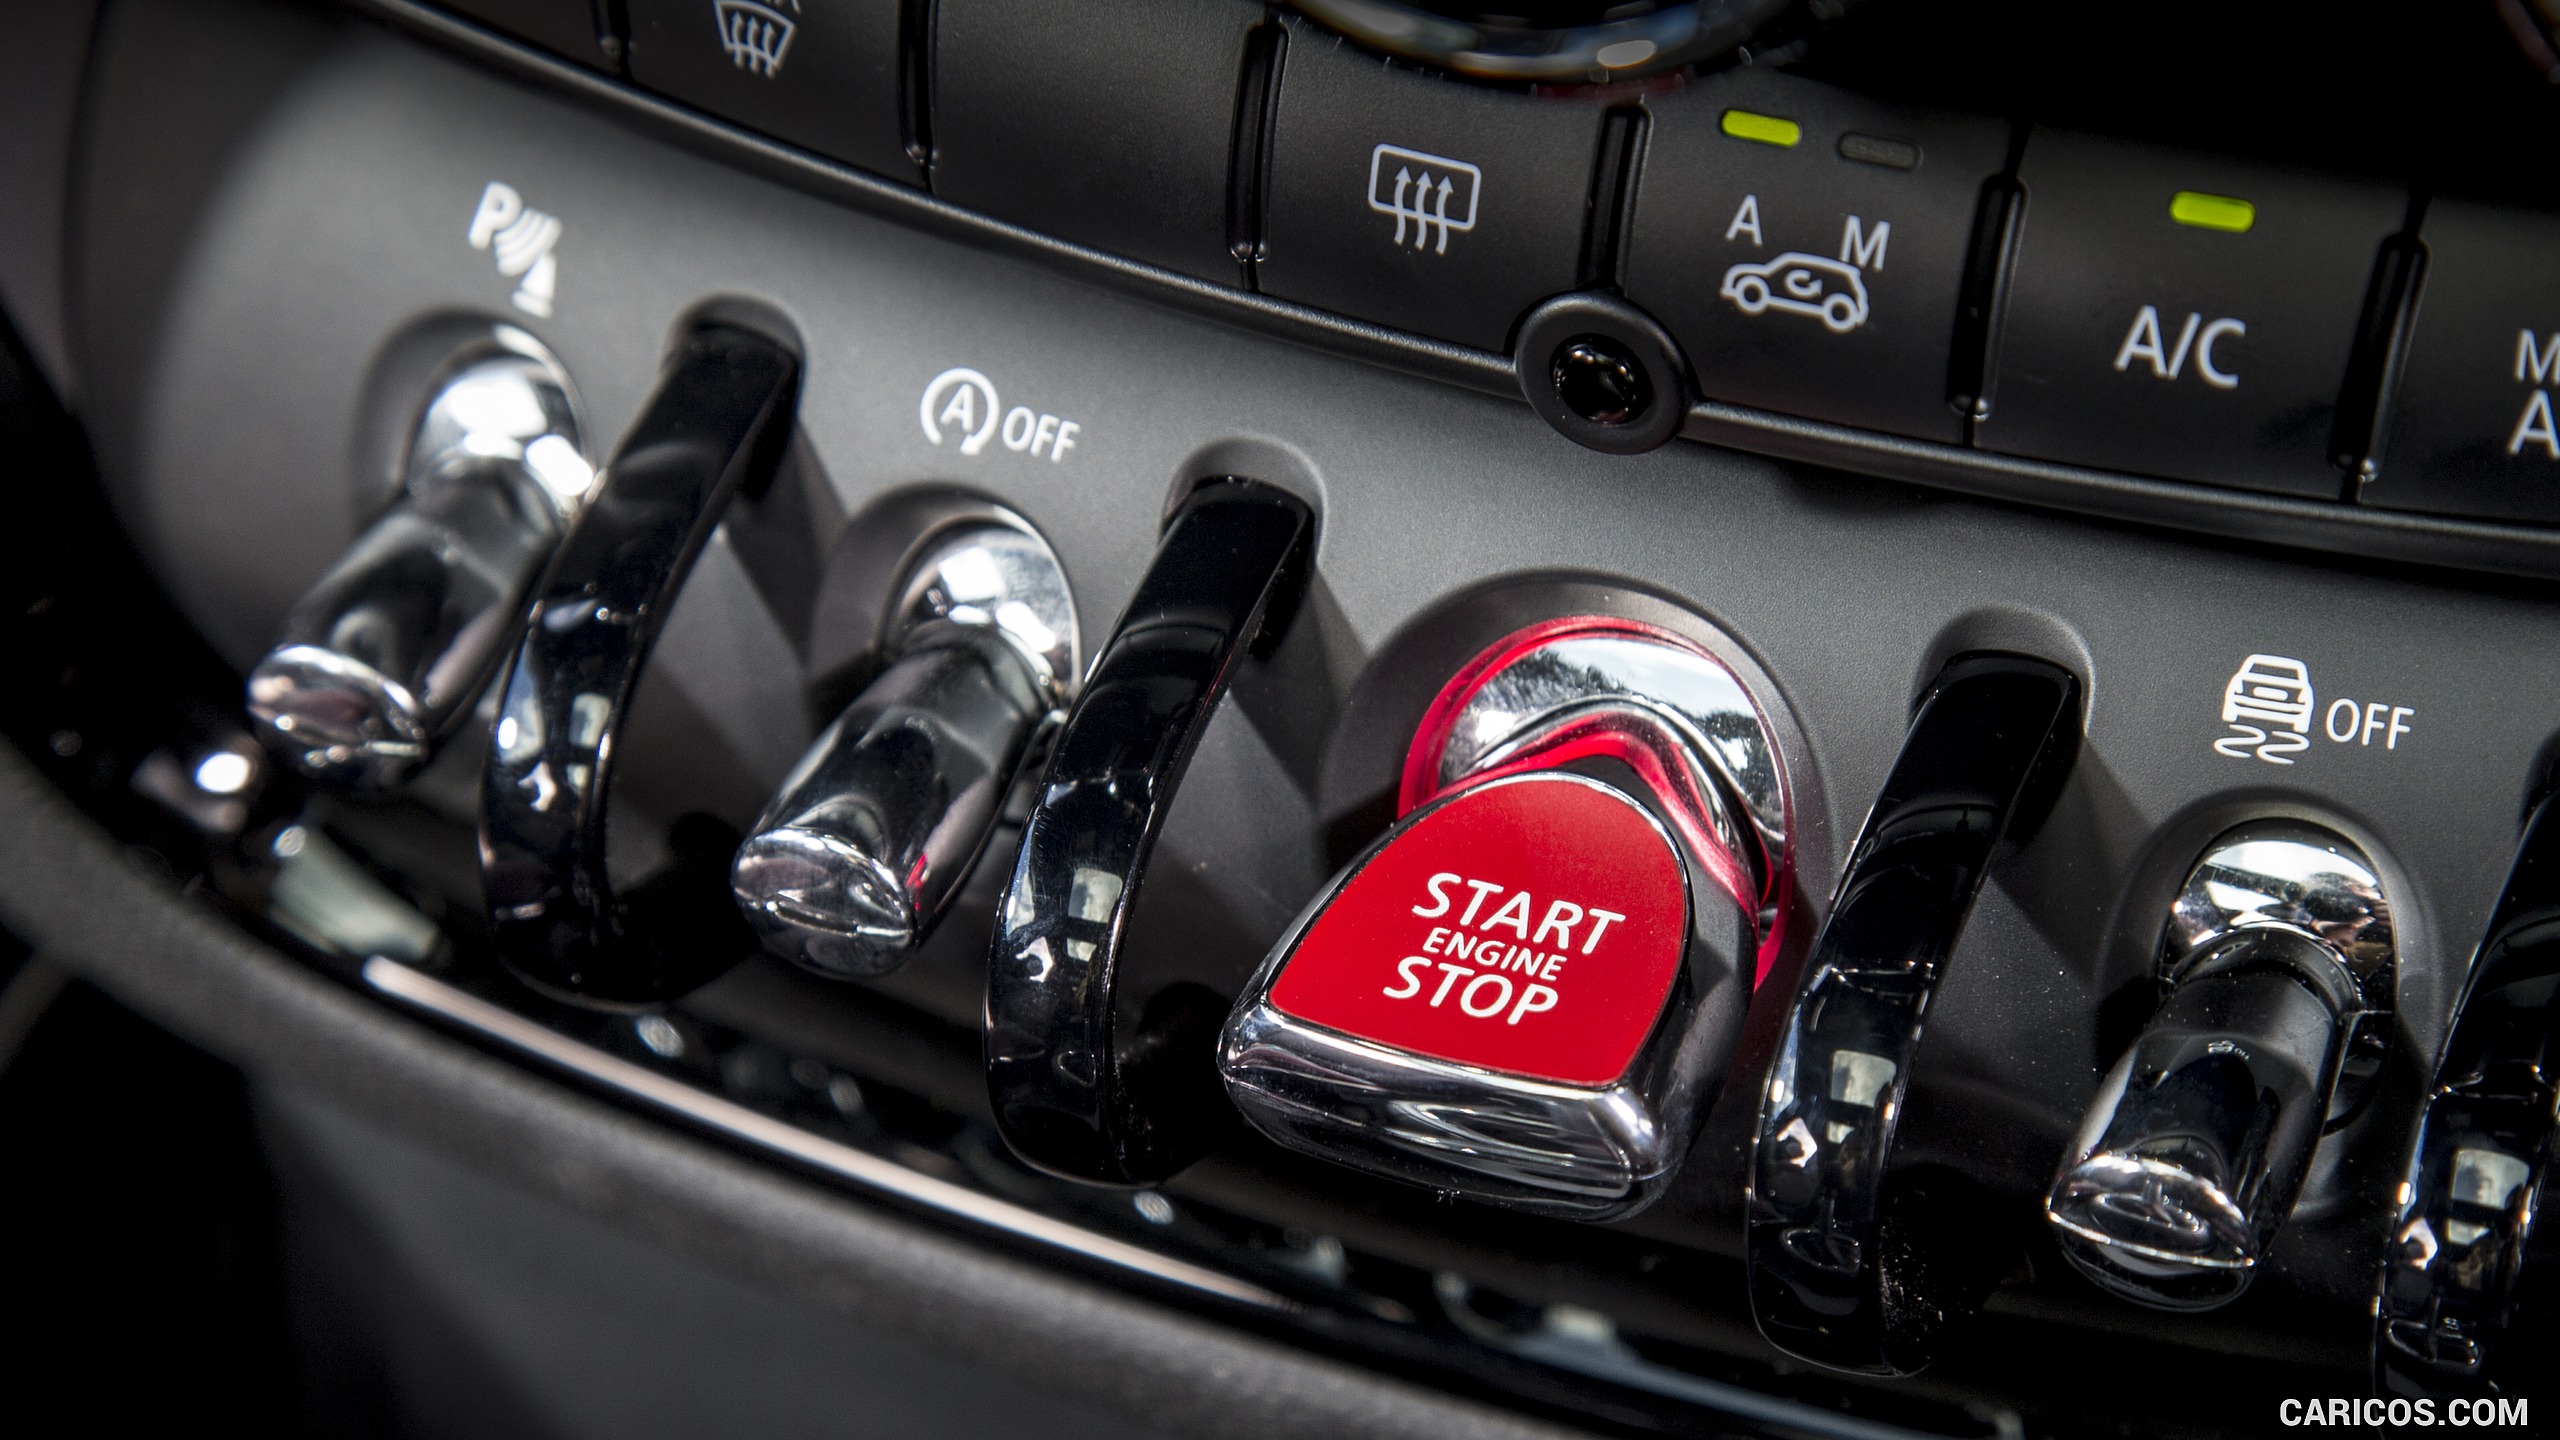 2016 MINI Cooper Clubman S (UK-Spec) - Interior, Controls, #264 of 275